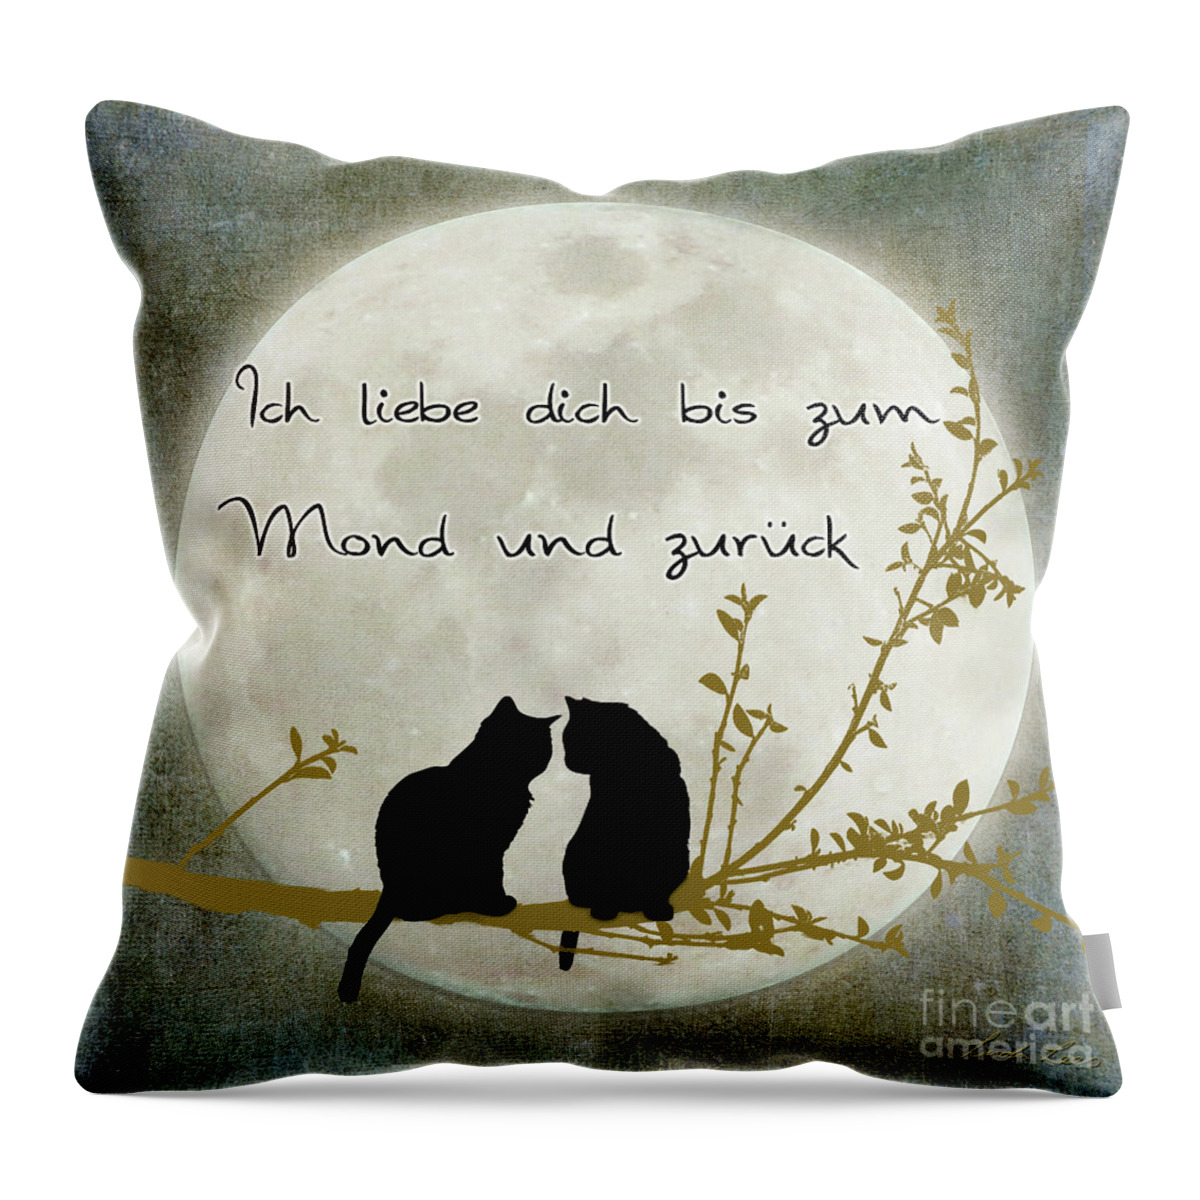 Mond Throw Pillow featuring the digital art Ich liebe dich bis zum Mond und zuruck by Linda Lees